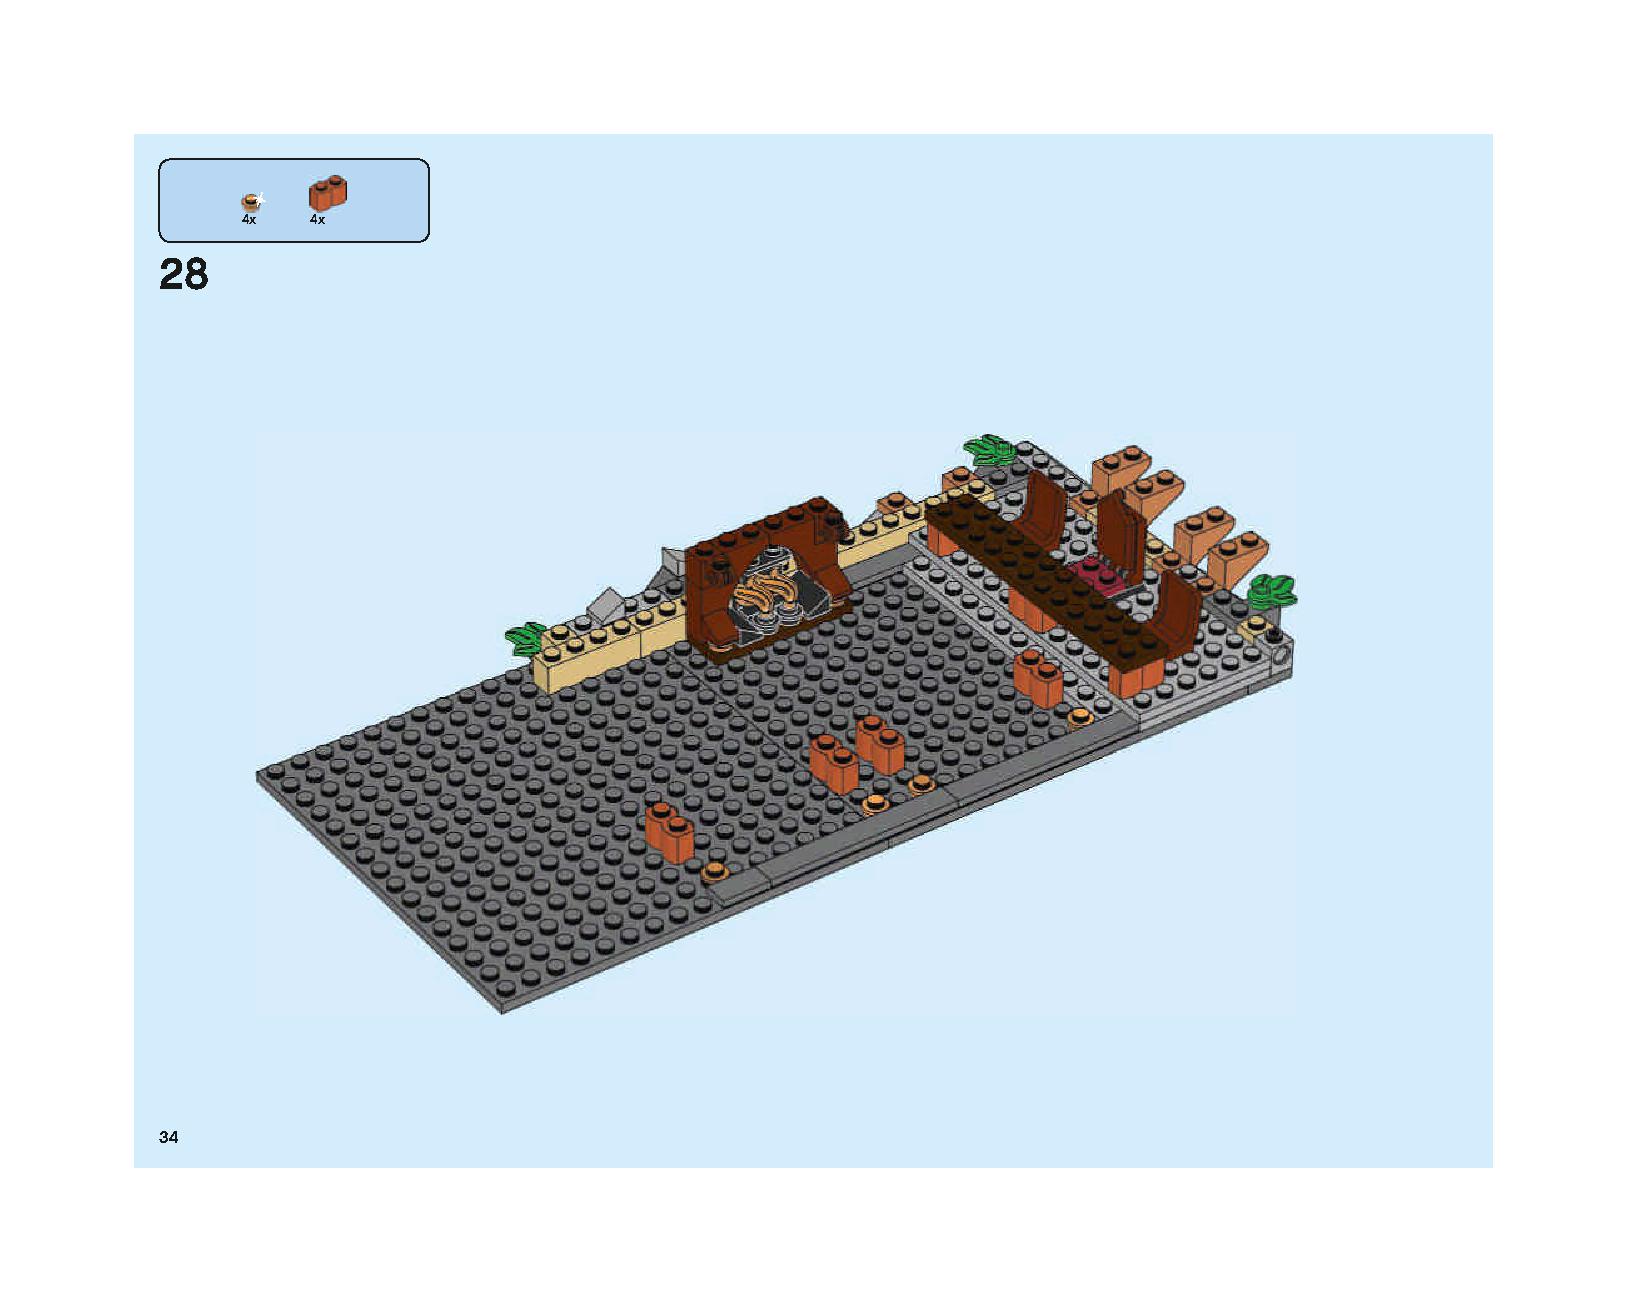 ホグワーツの大広間 75954 レゴの商品情報 レゴの説明書・組立方法 34 page